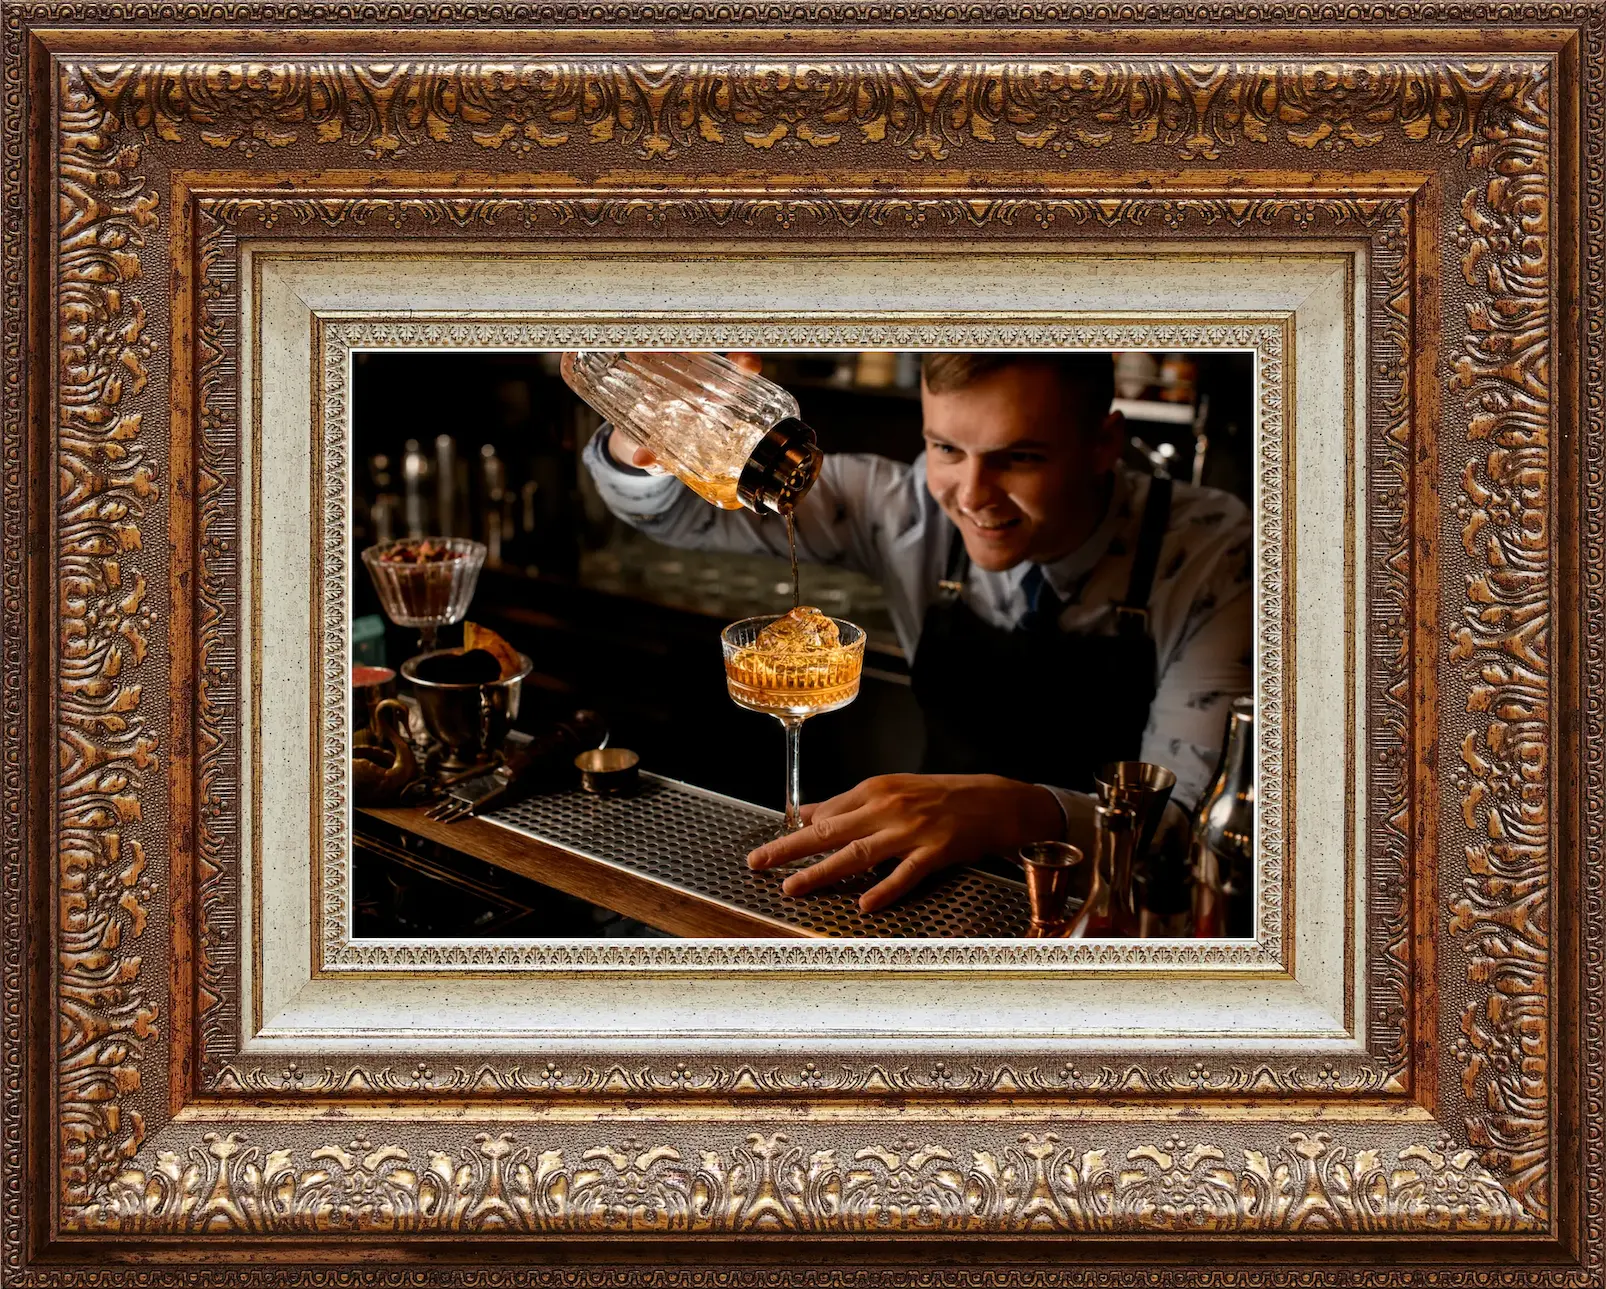 Image of bartender straining a mocktail